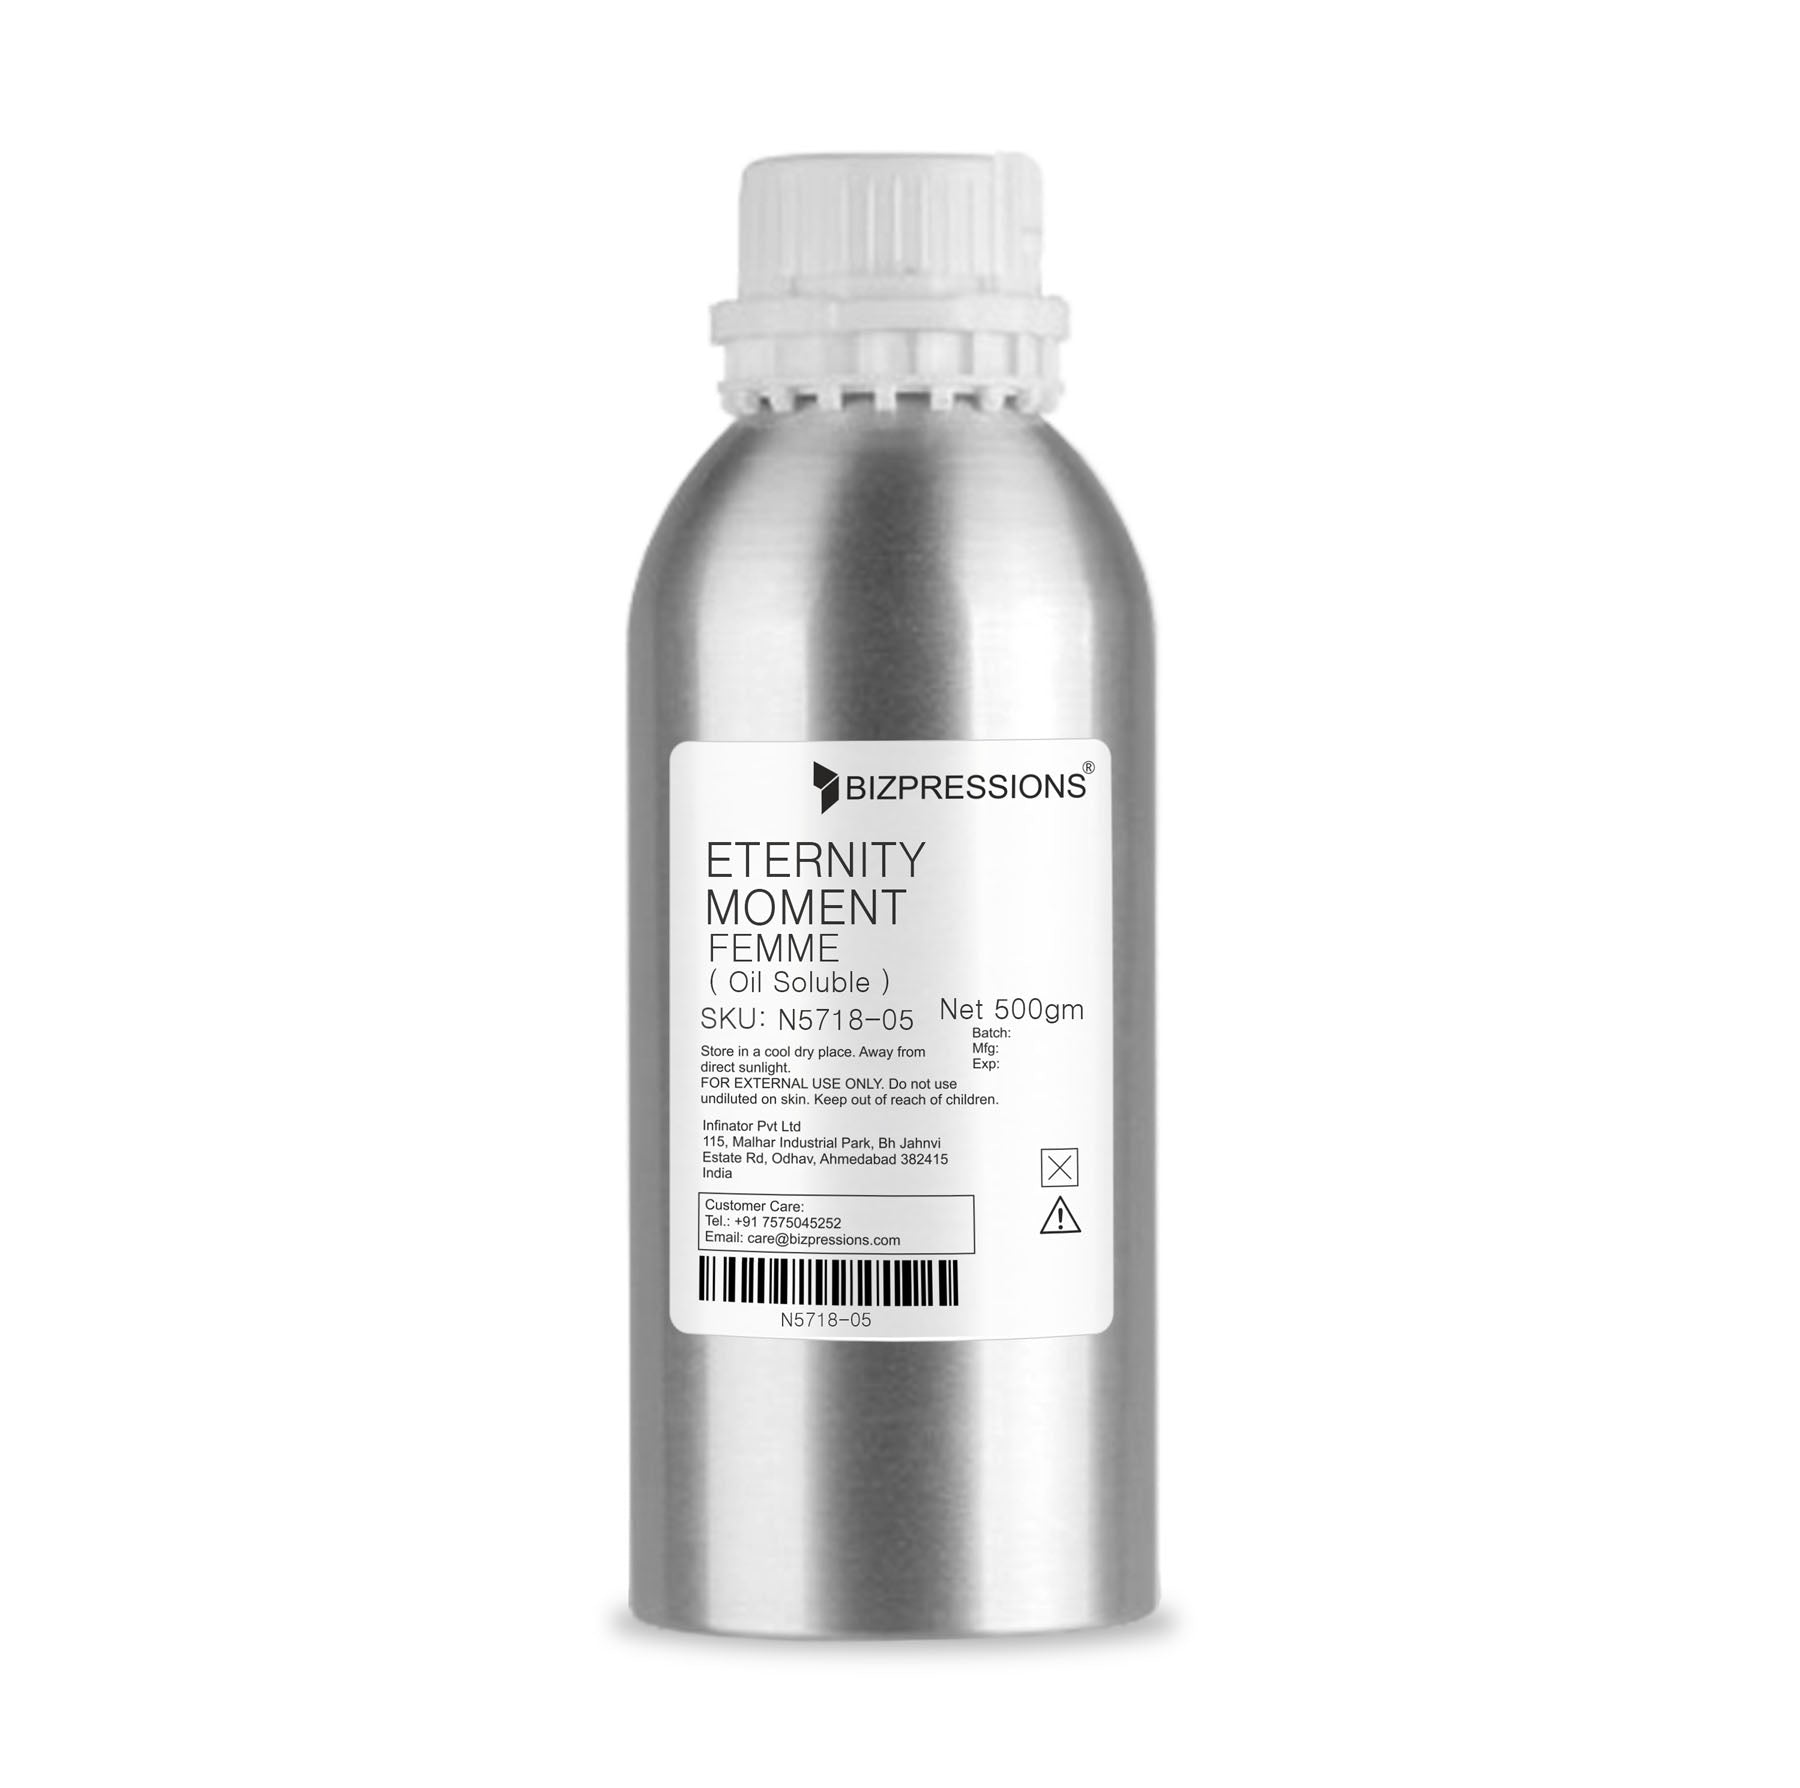 ETERNITY MOMENT FEMME - Fragrance ( Oil Soluble ) - 500 gm